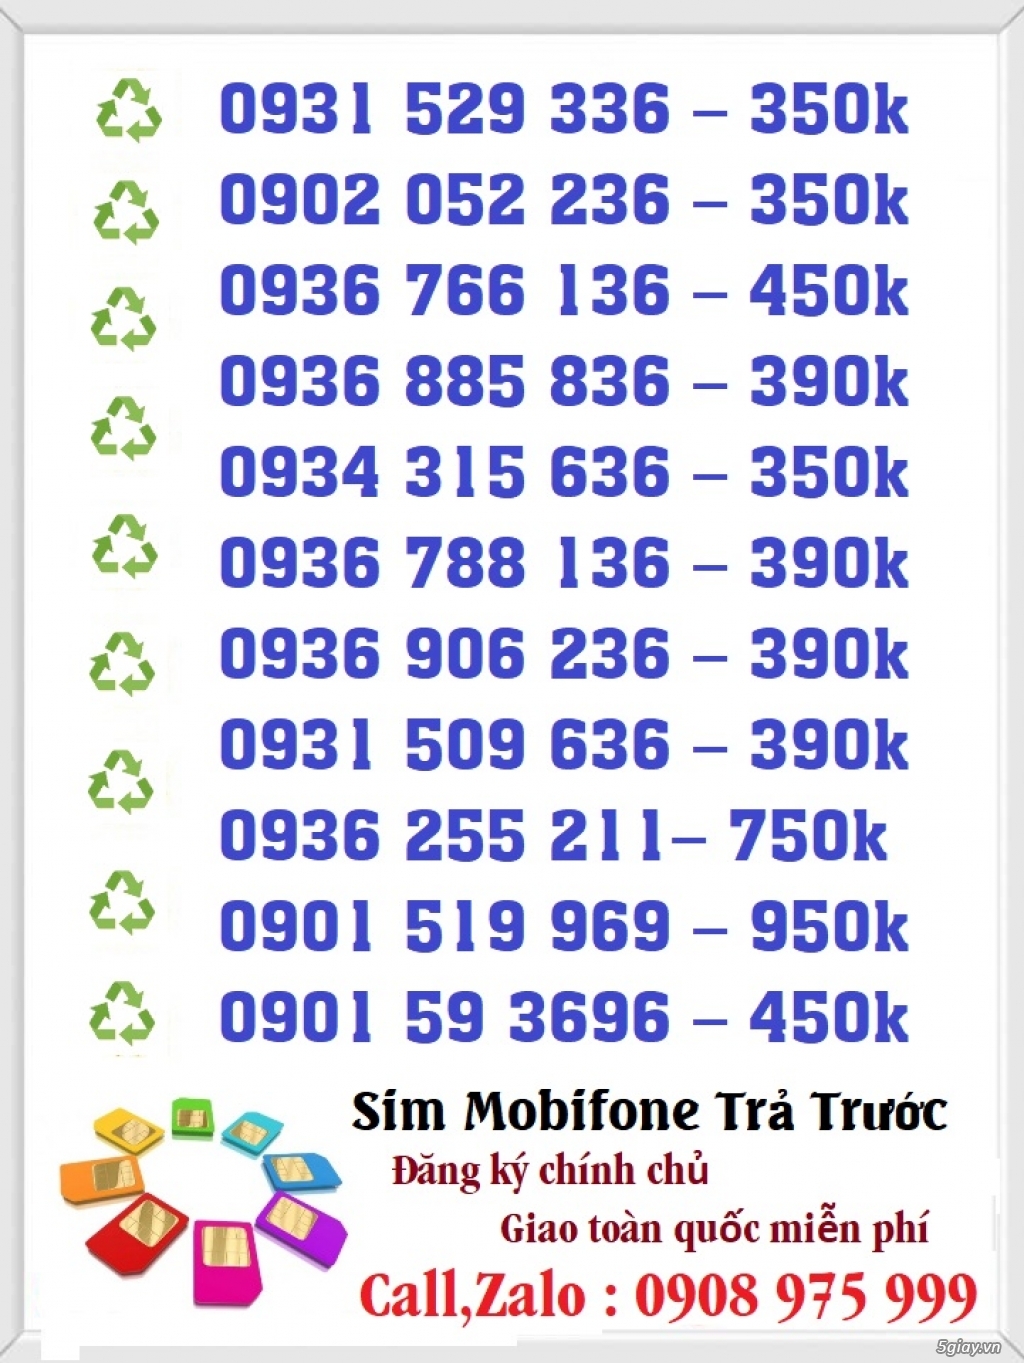 Sim Số Đẹp Giá Rẻ Đầu 09 - Mobifone Trả Trước - 5